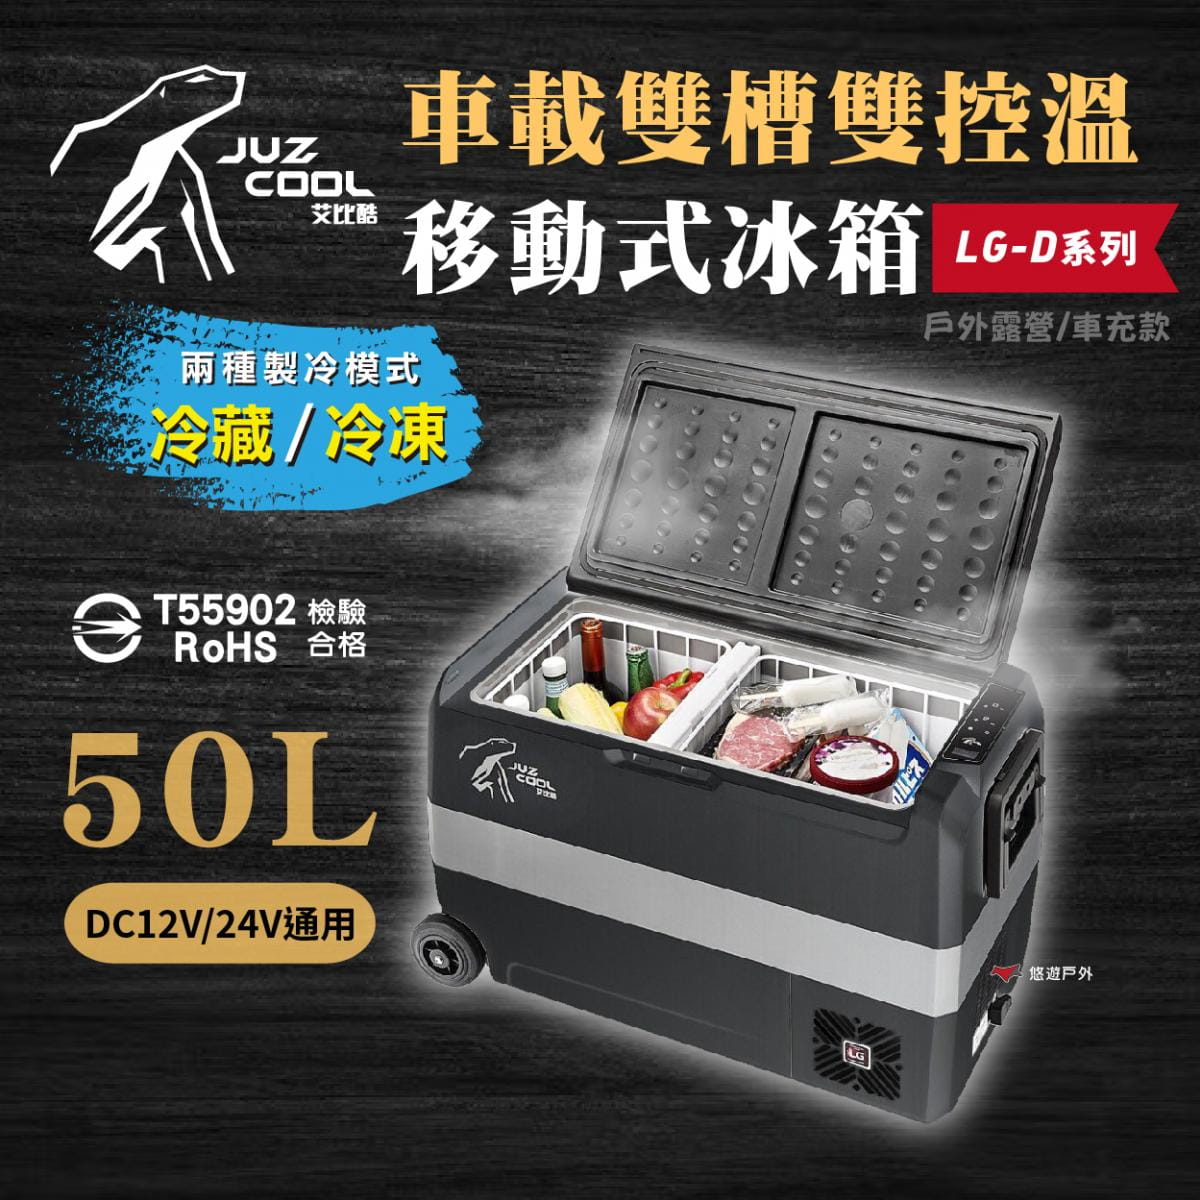 【艾比酷】雙槽雙溫控車用冰箱LG-D50 (悠遊戶外) 1